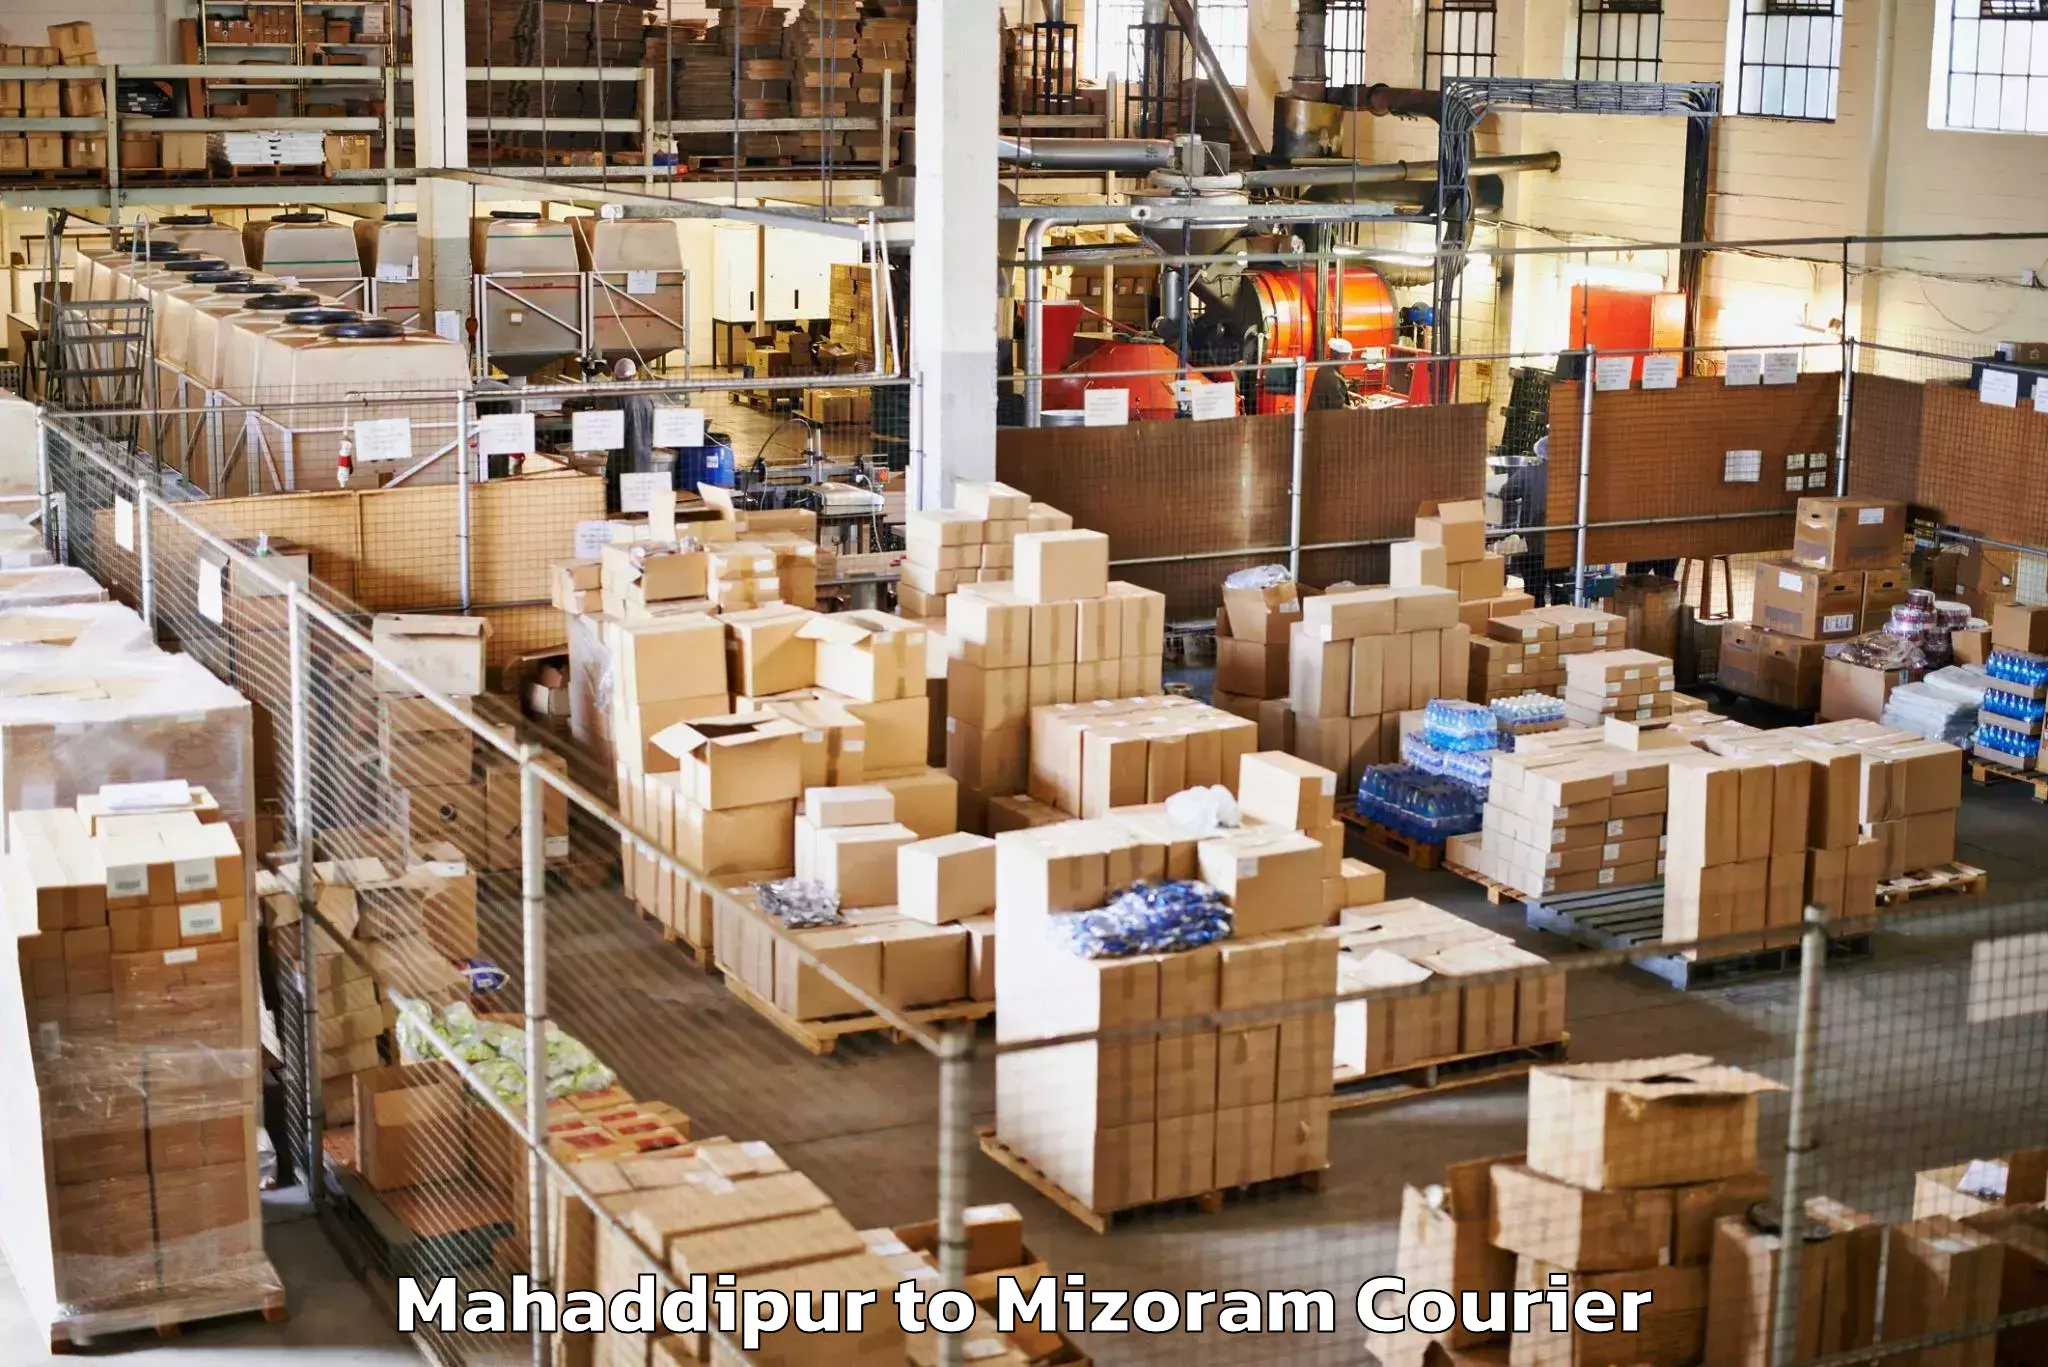 Holiday baggage shipping in Mahaddipur to Aizawl